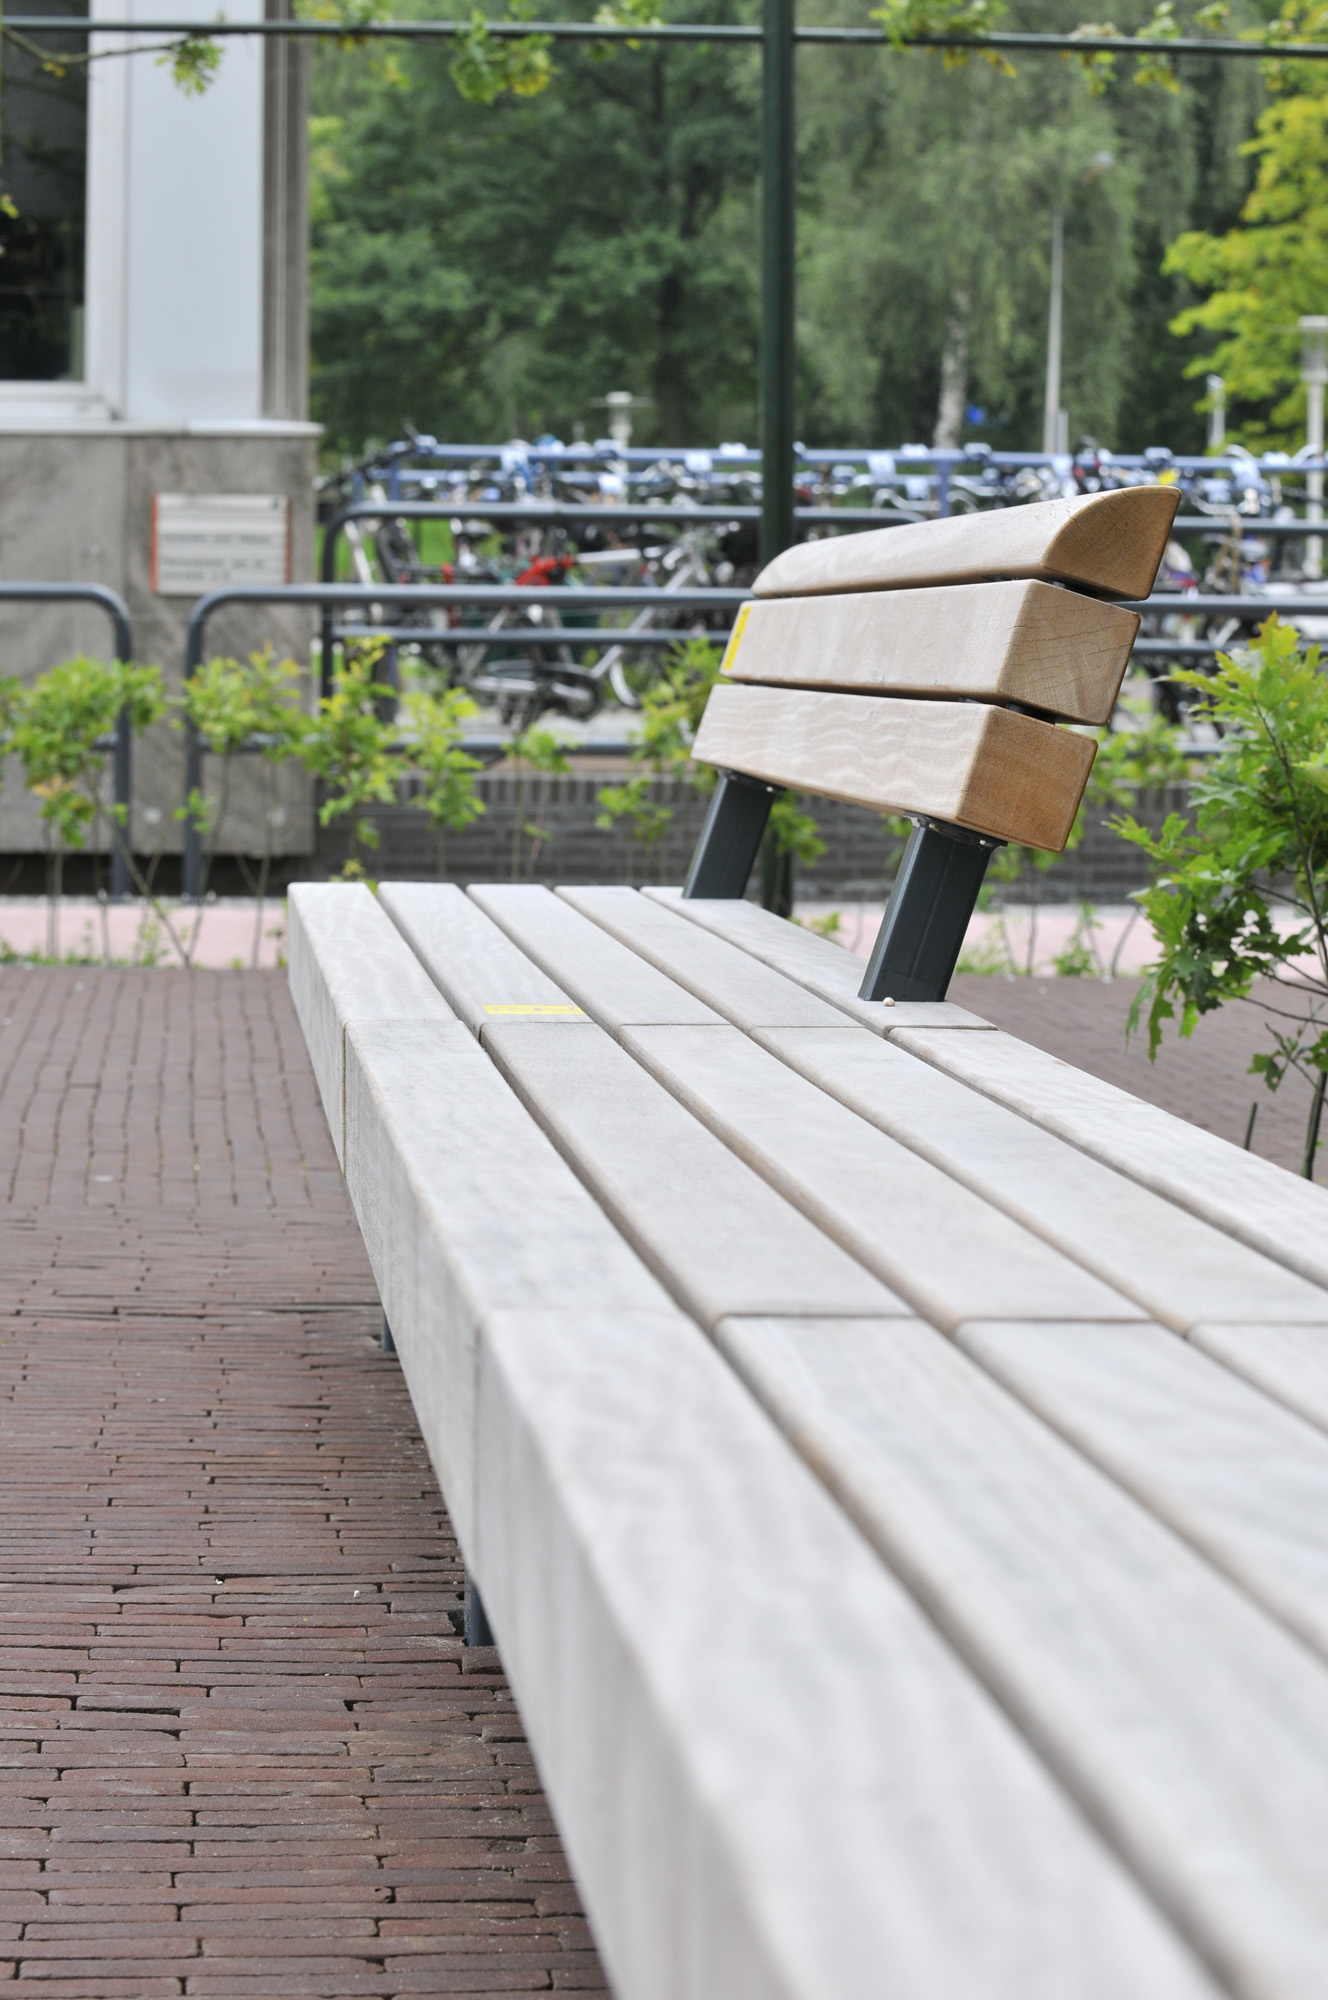 Banc pour espace public en bois avec jardinières - série tail